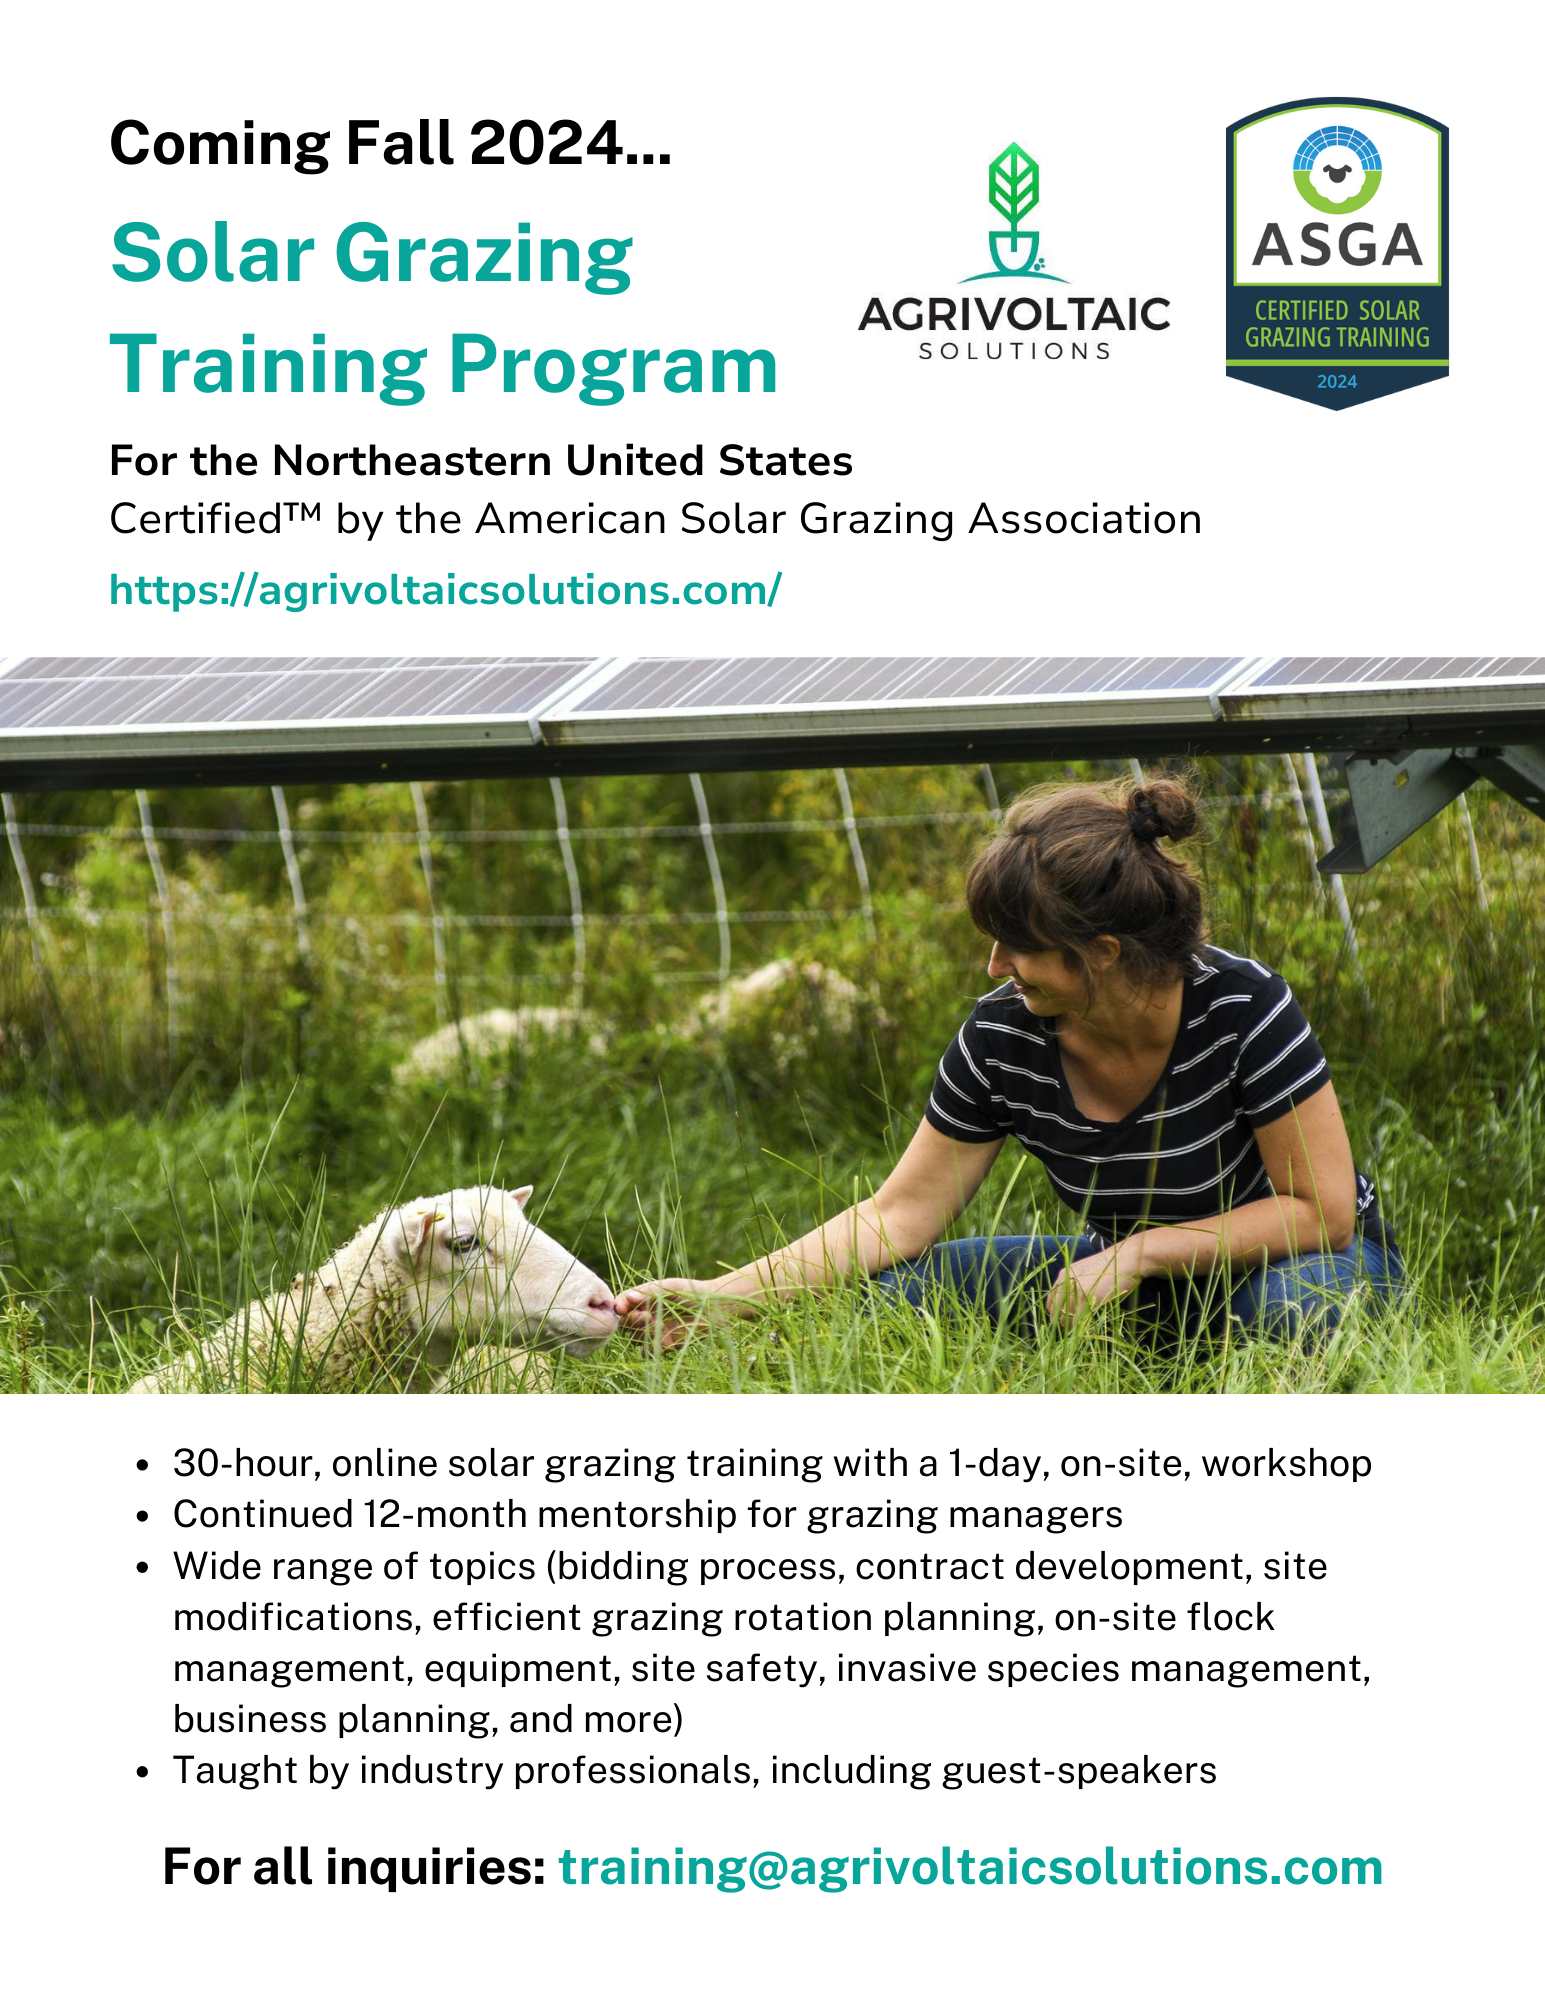 Agrivoltaic Solutions Solar Grazing Training Program - Fall 2024